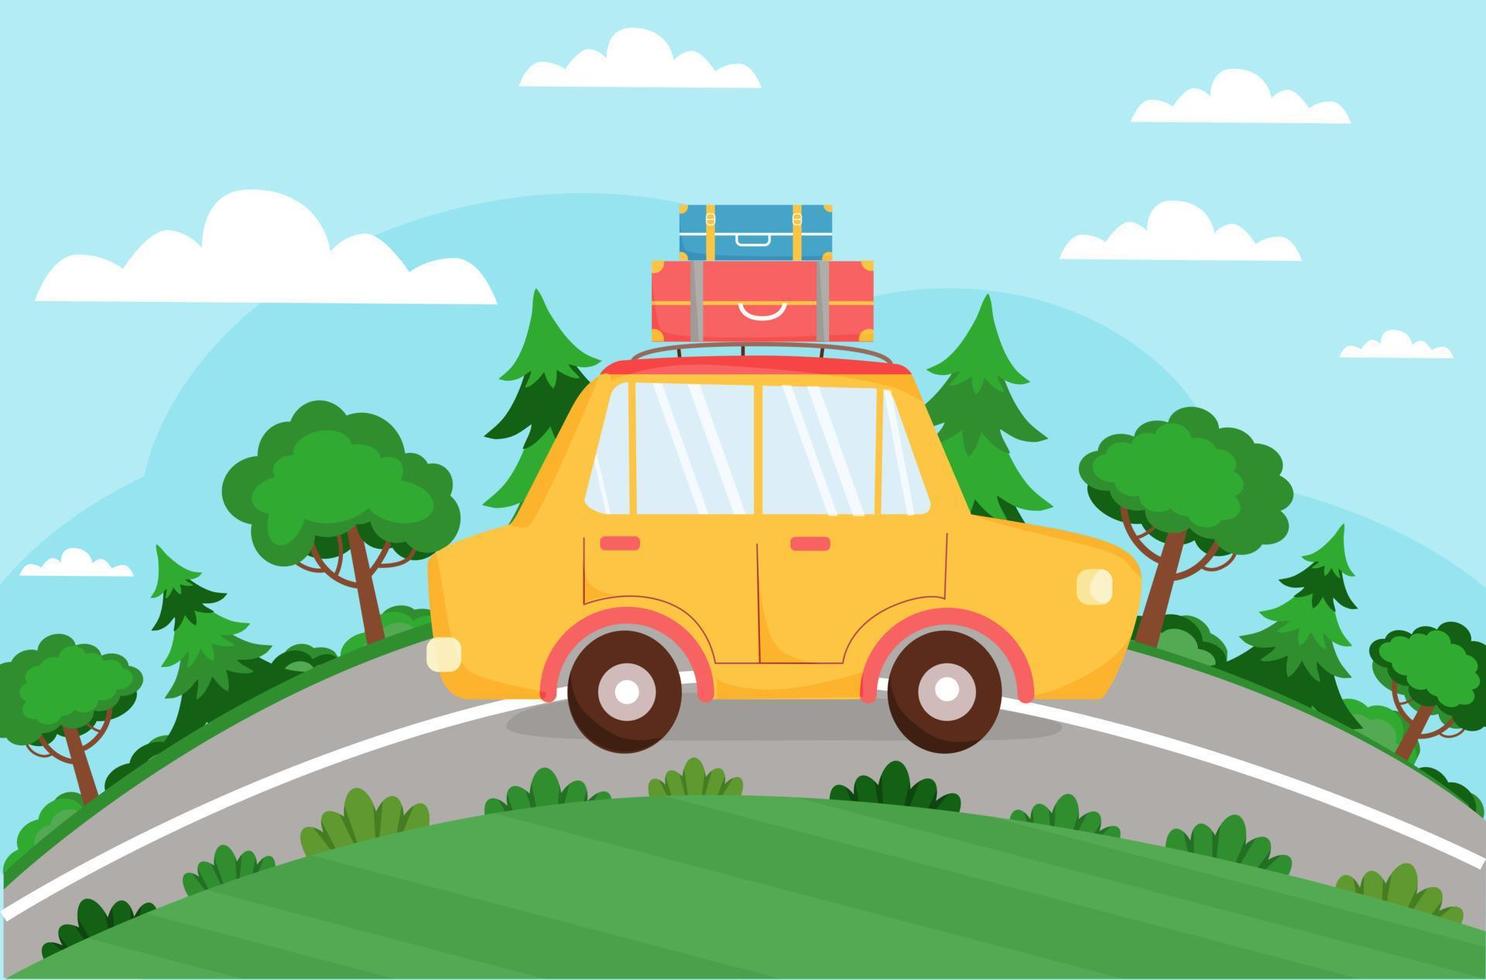 une voiture jaune avec des valises roule sur la route. fond d'été avec auto, route, arbres. vacances, tourisme, voyage d'été, vacances. illustration vectorielle en style plat. vecteur